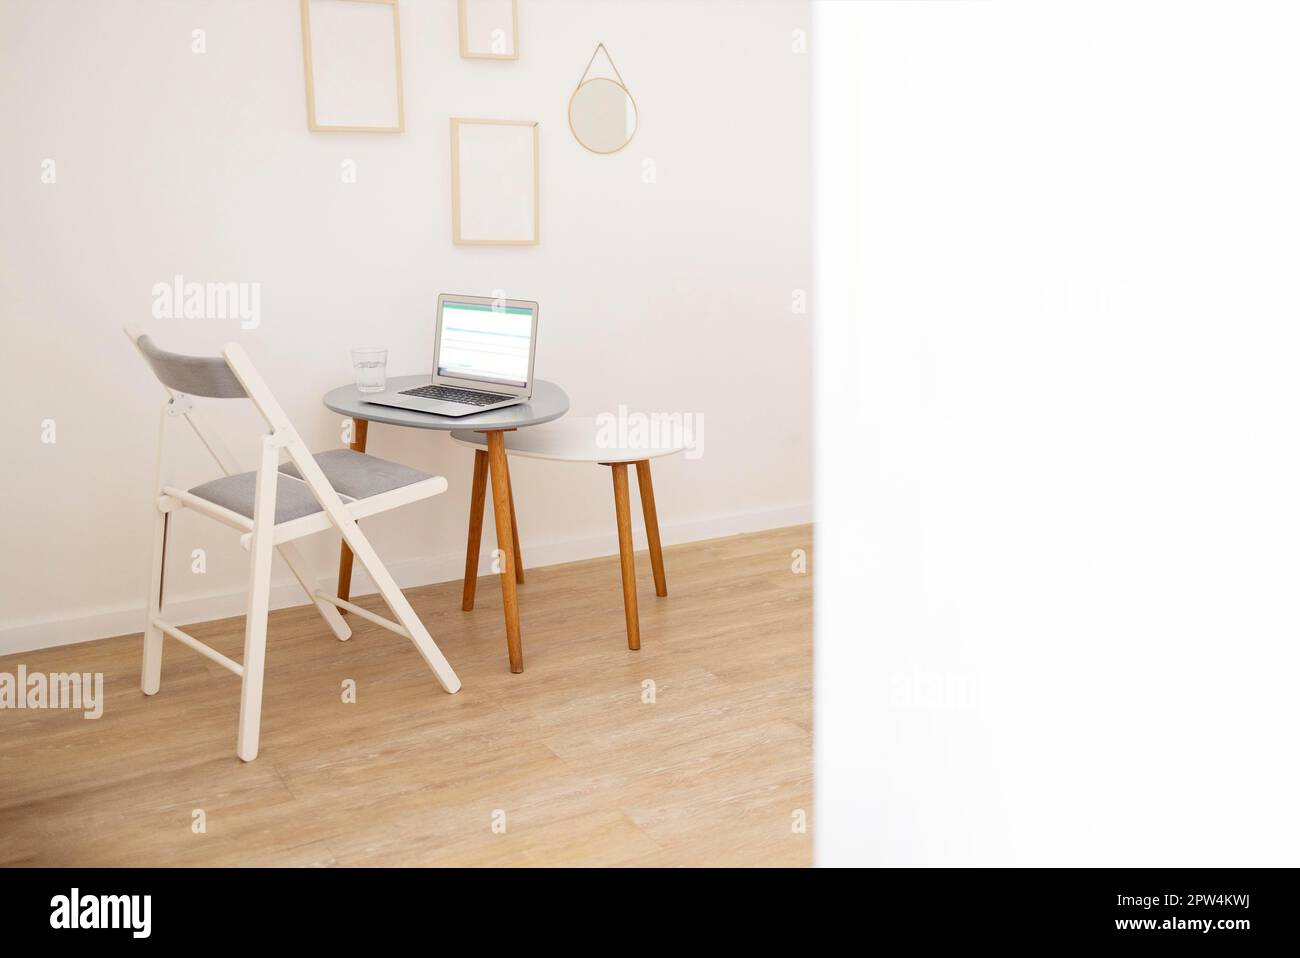 Hintergrund eines minimalen Home Office Arbeitsplatzes in einem modernen Apartment mit abstrakter Kunst und Kopierbereich. Modell Stockfoto